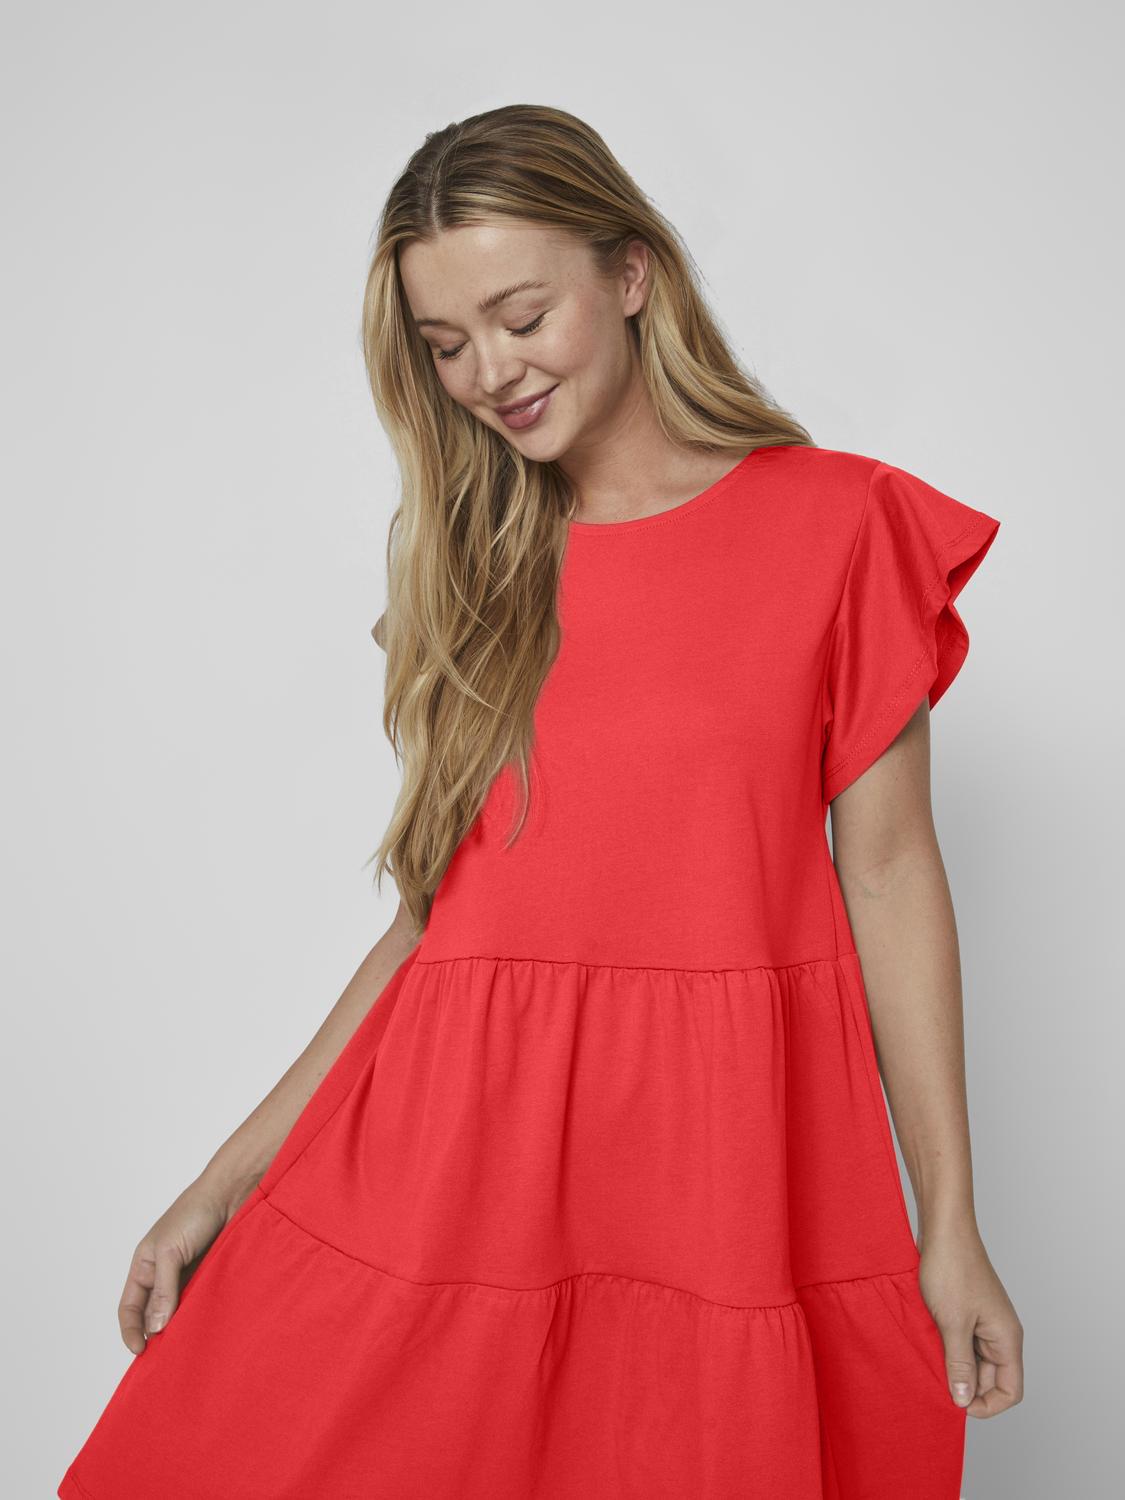 VISUMMER Dress - Poppy Red